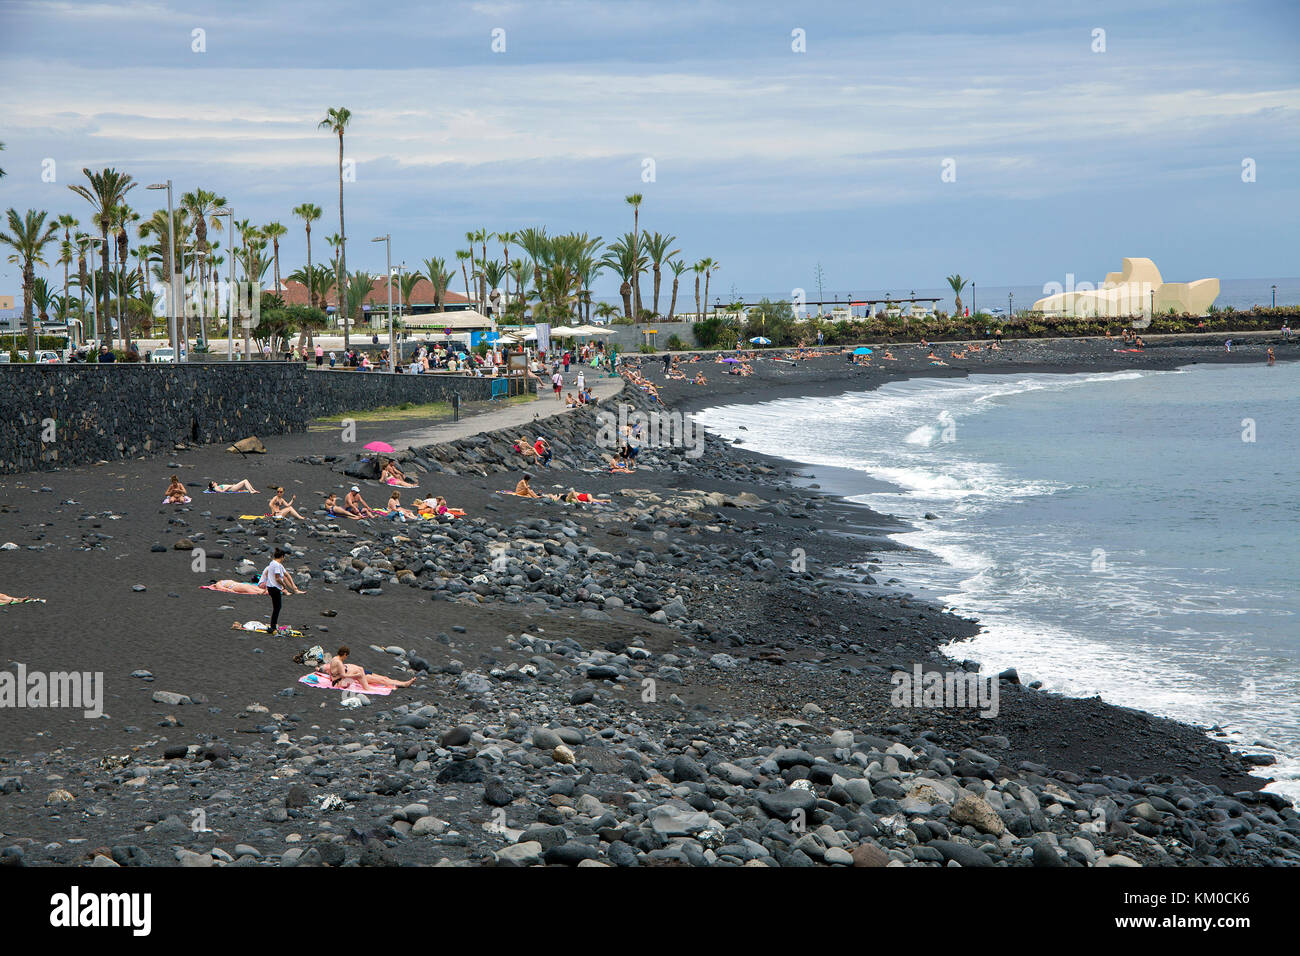 Plage de Puerto de la cruz, au nord de l'île de Tenerife, Canaries, Espagne Banque D'Images